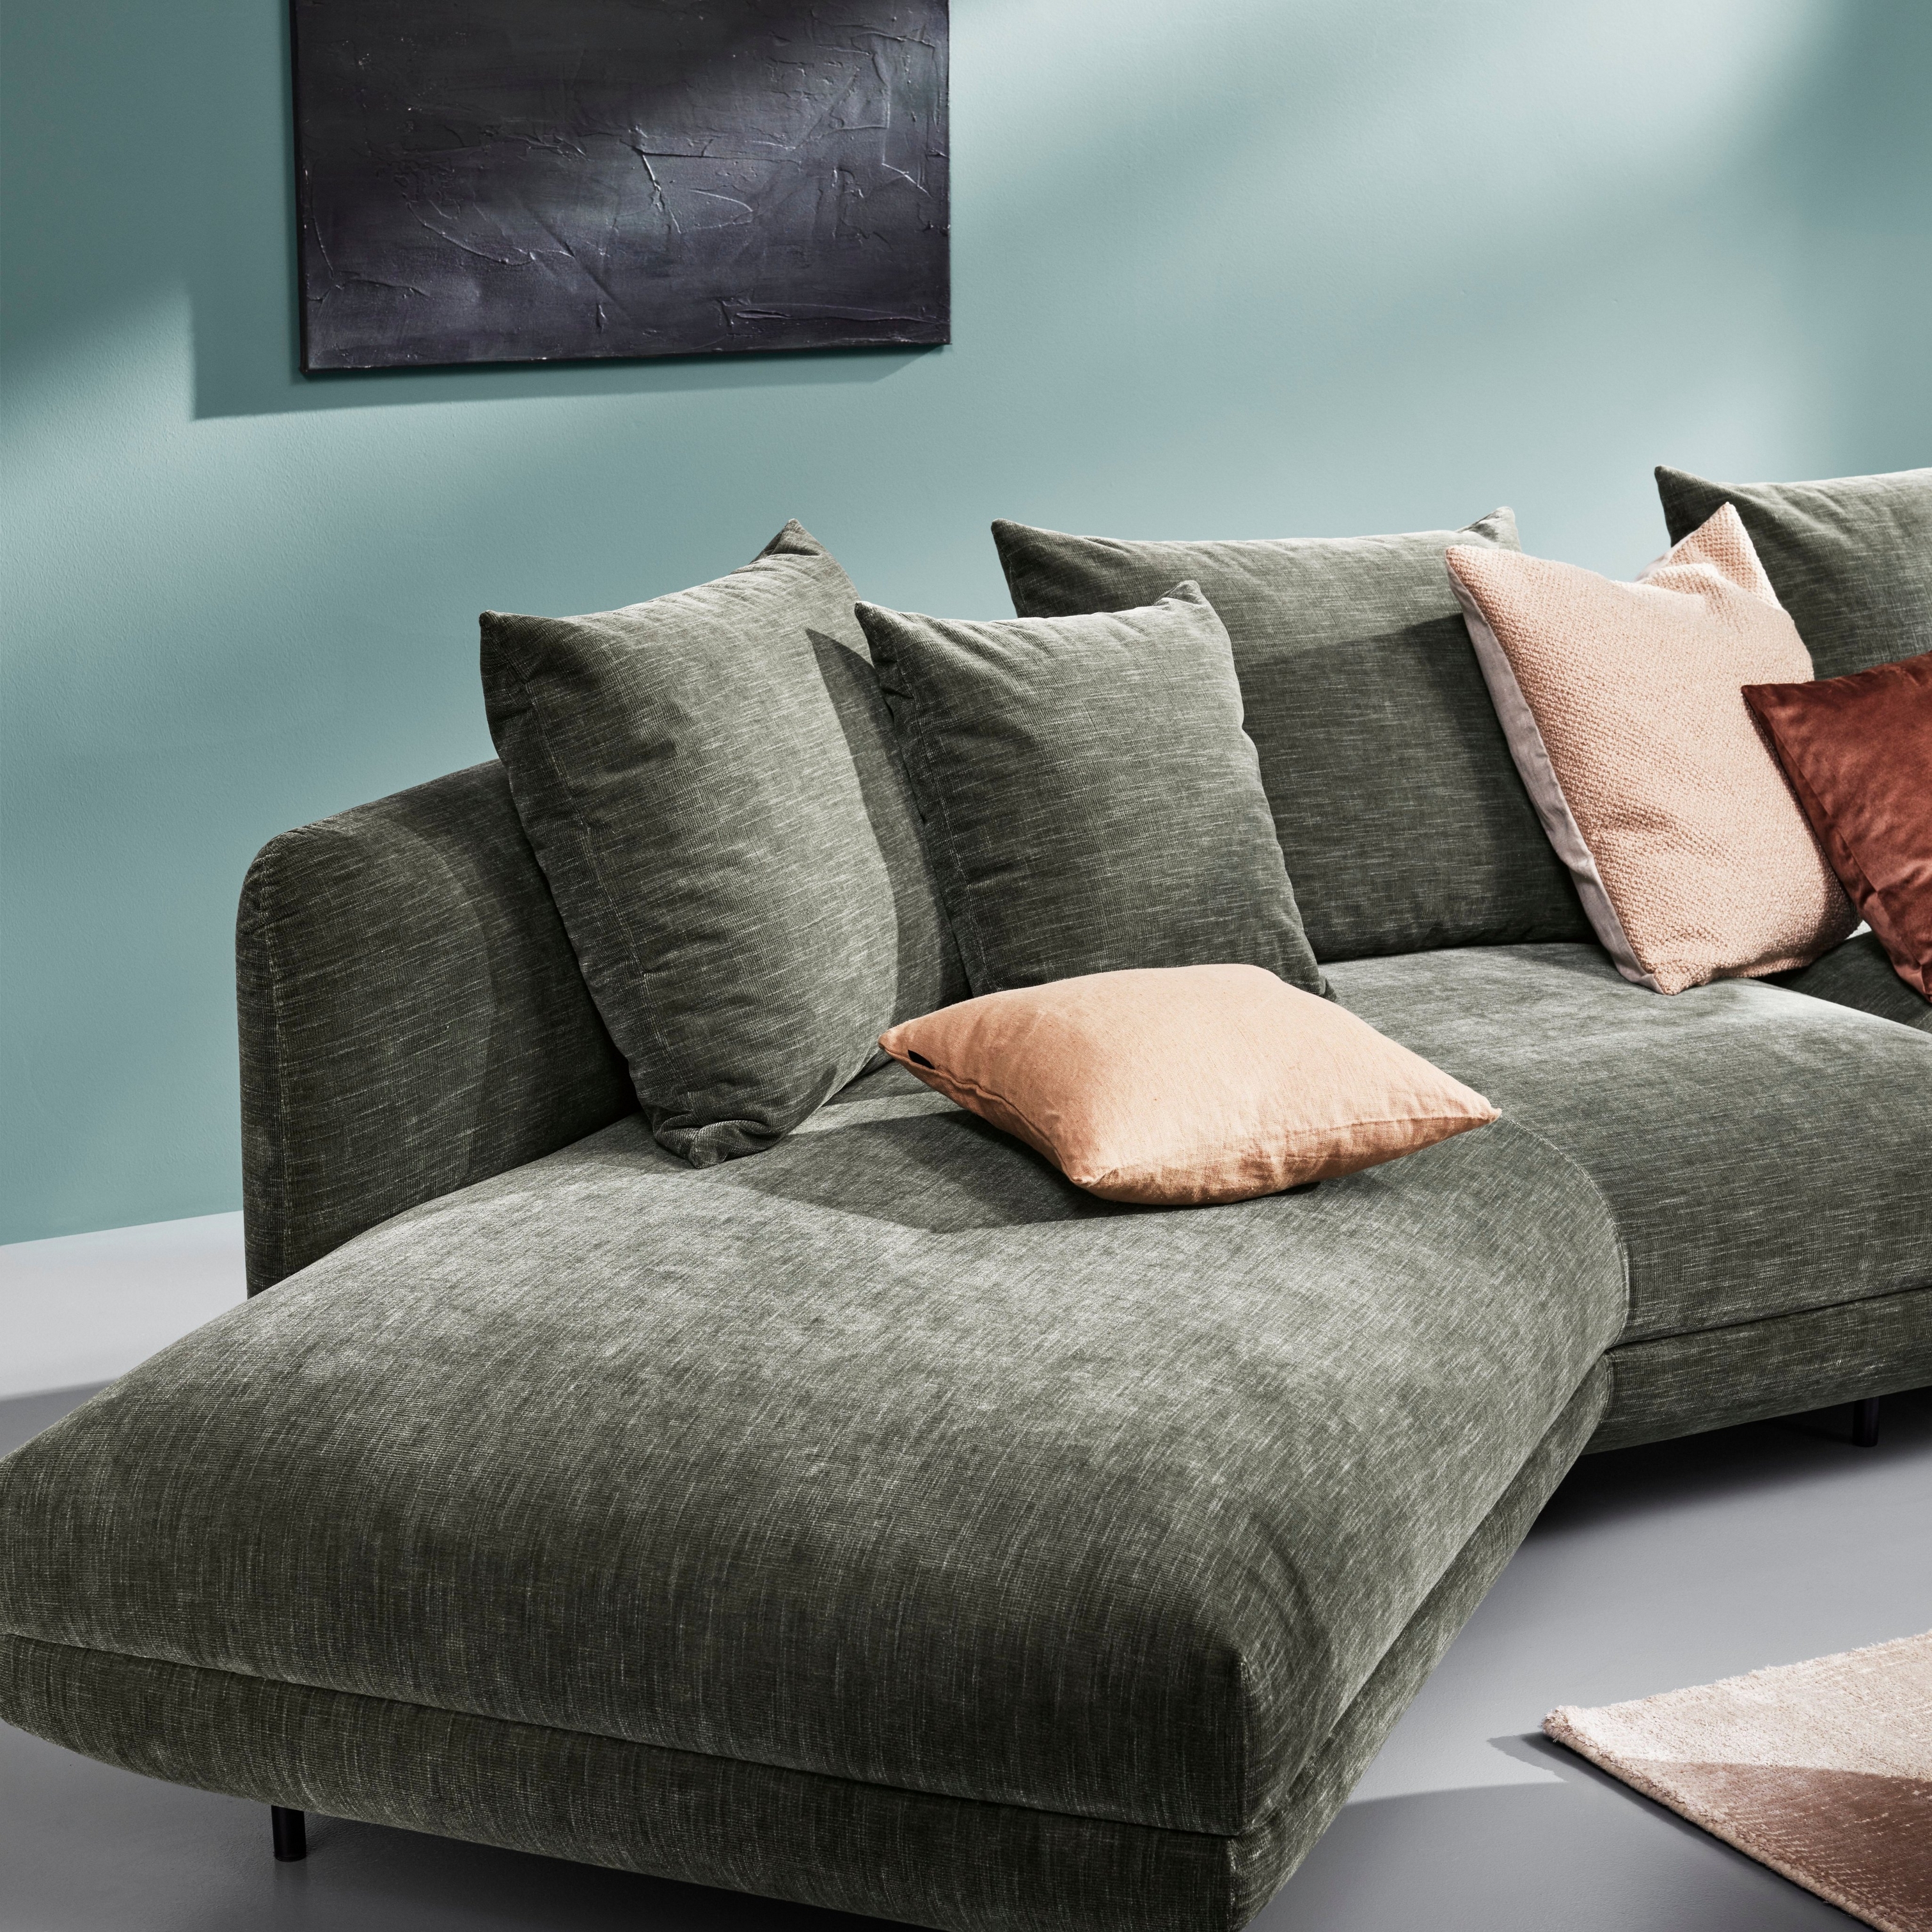 放着靠垫枕头的绿色 Salamanca 模块沙发，背景是以抽象艺术元素装饰的青绿色墙壁。